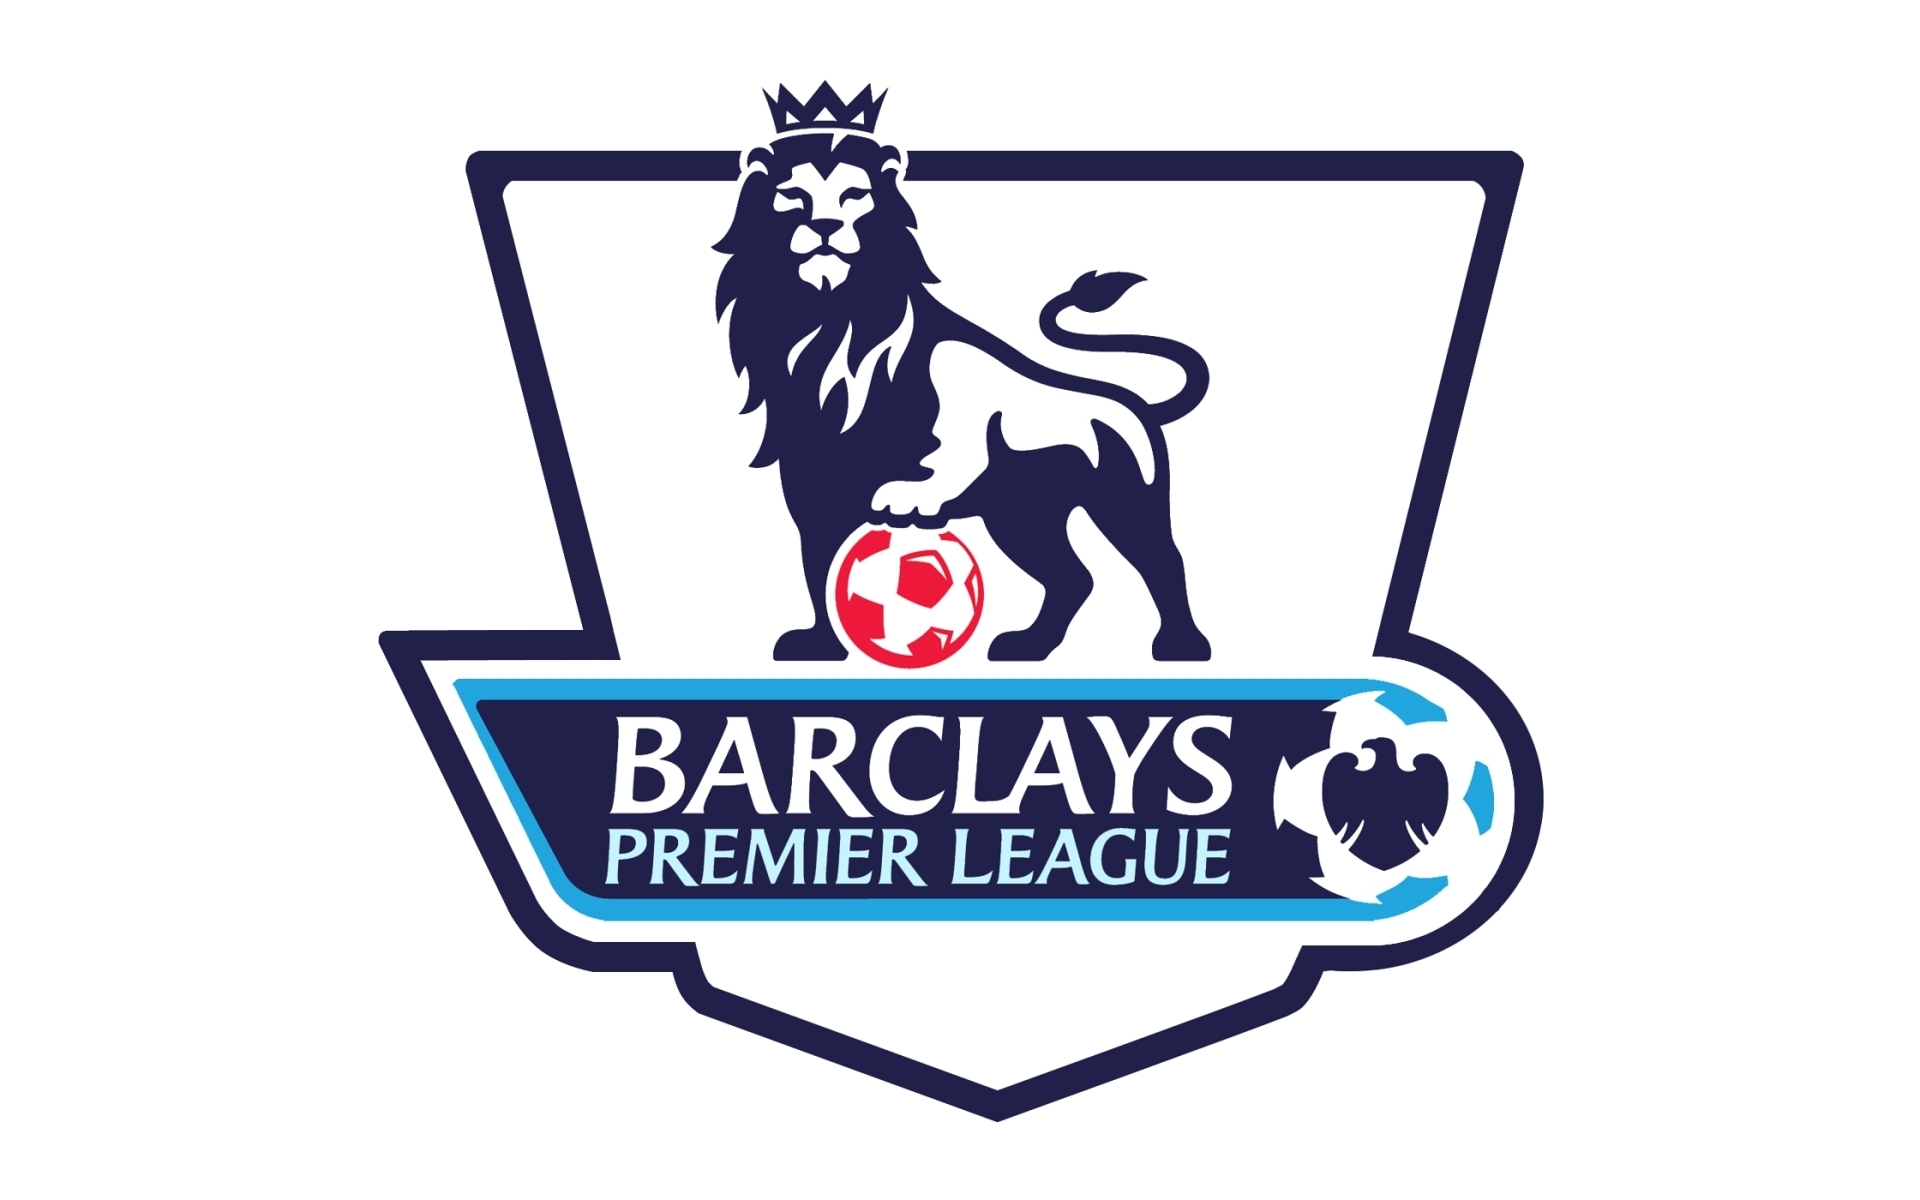 The current Premier League logo.